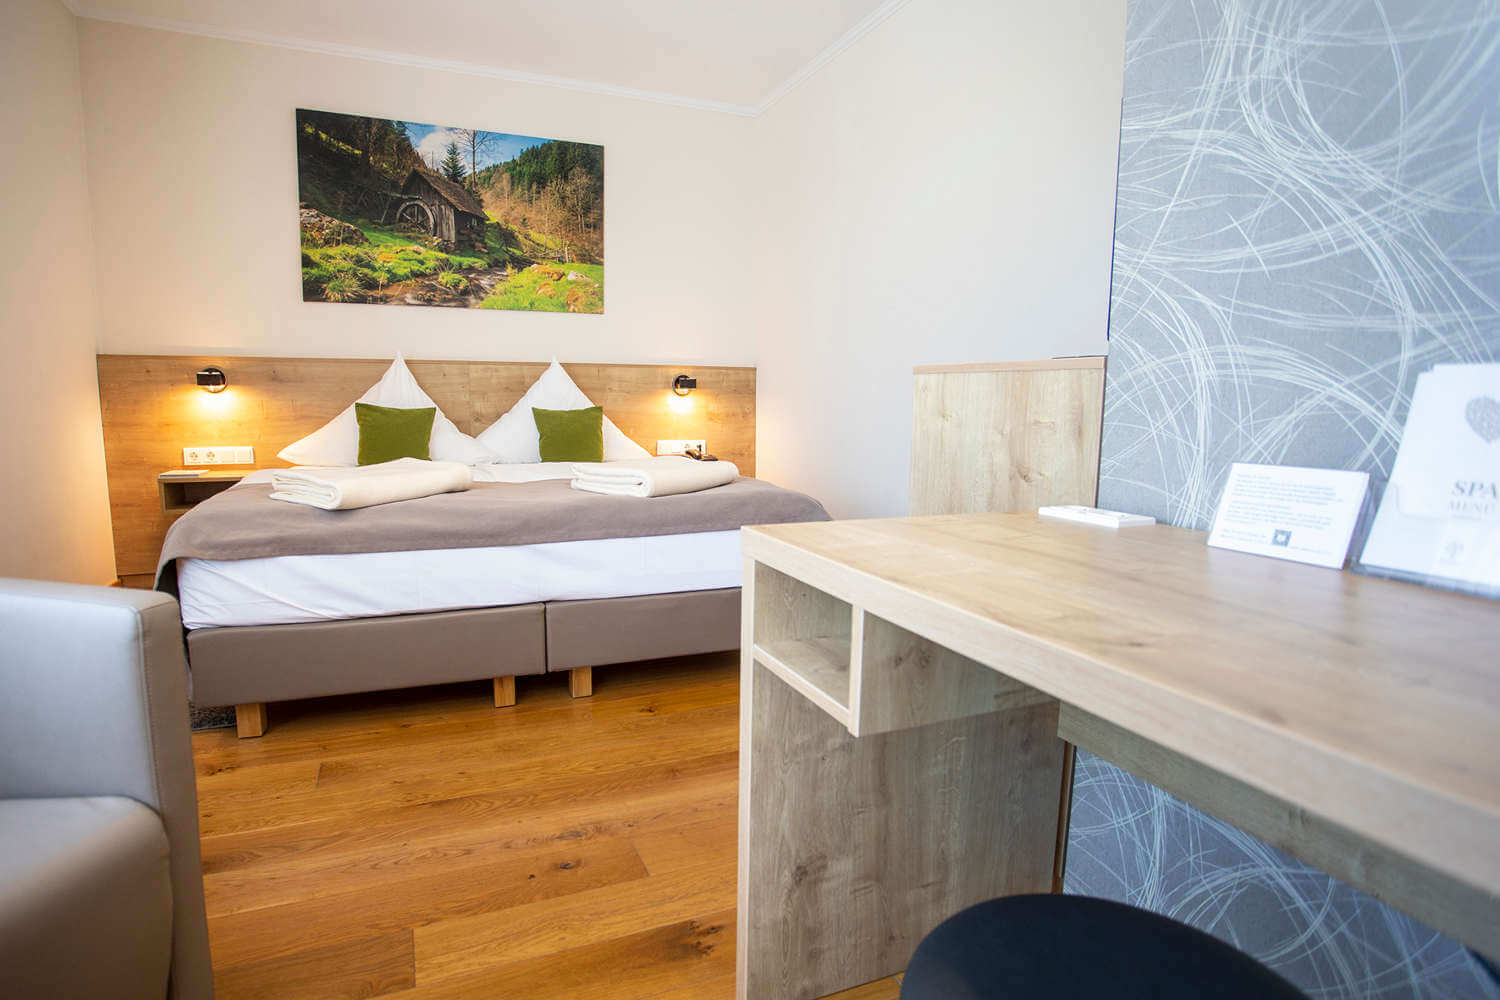 Blick über den Schreibtisch auf das Bett im Doppelzimmer "Stammhaus A Talseite" im Hotel Diedrich, Sauerland in Nordrhein-Westfalen